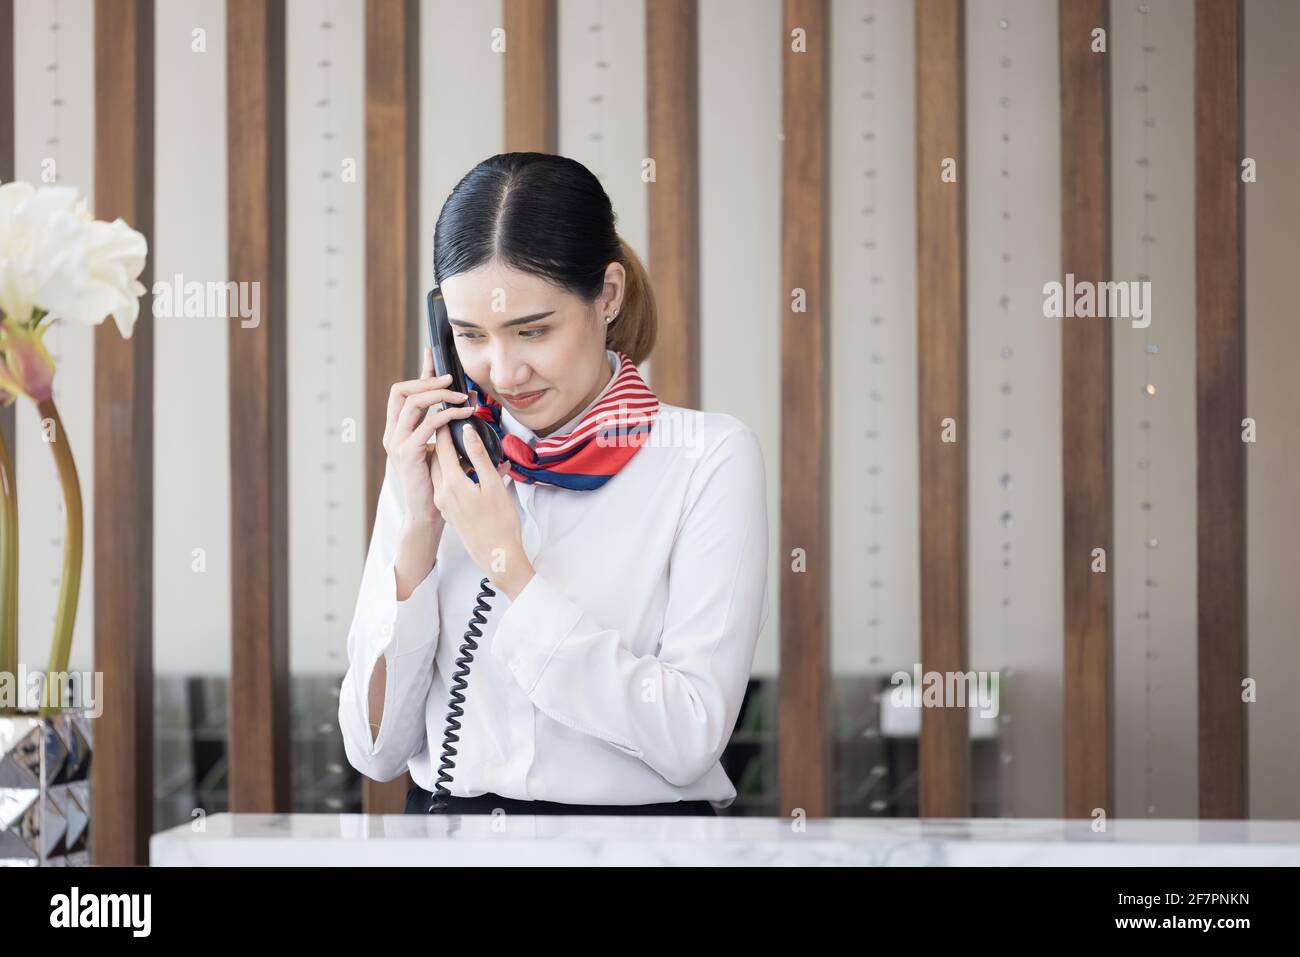 Willkommen im Hotel, glückliche junge asiatische Frau, Angestellte an der Rezeption Lächelnd stehend, nimmt sie einen Anruf an einer modernen Luxusrezeption an Zähler Stockfoto